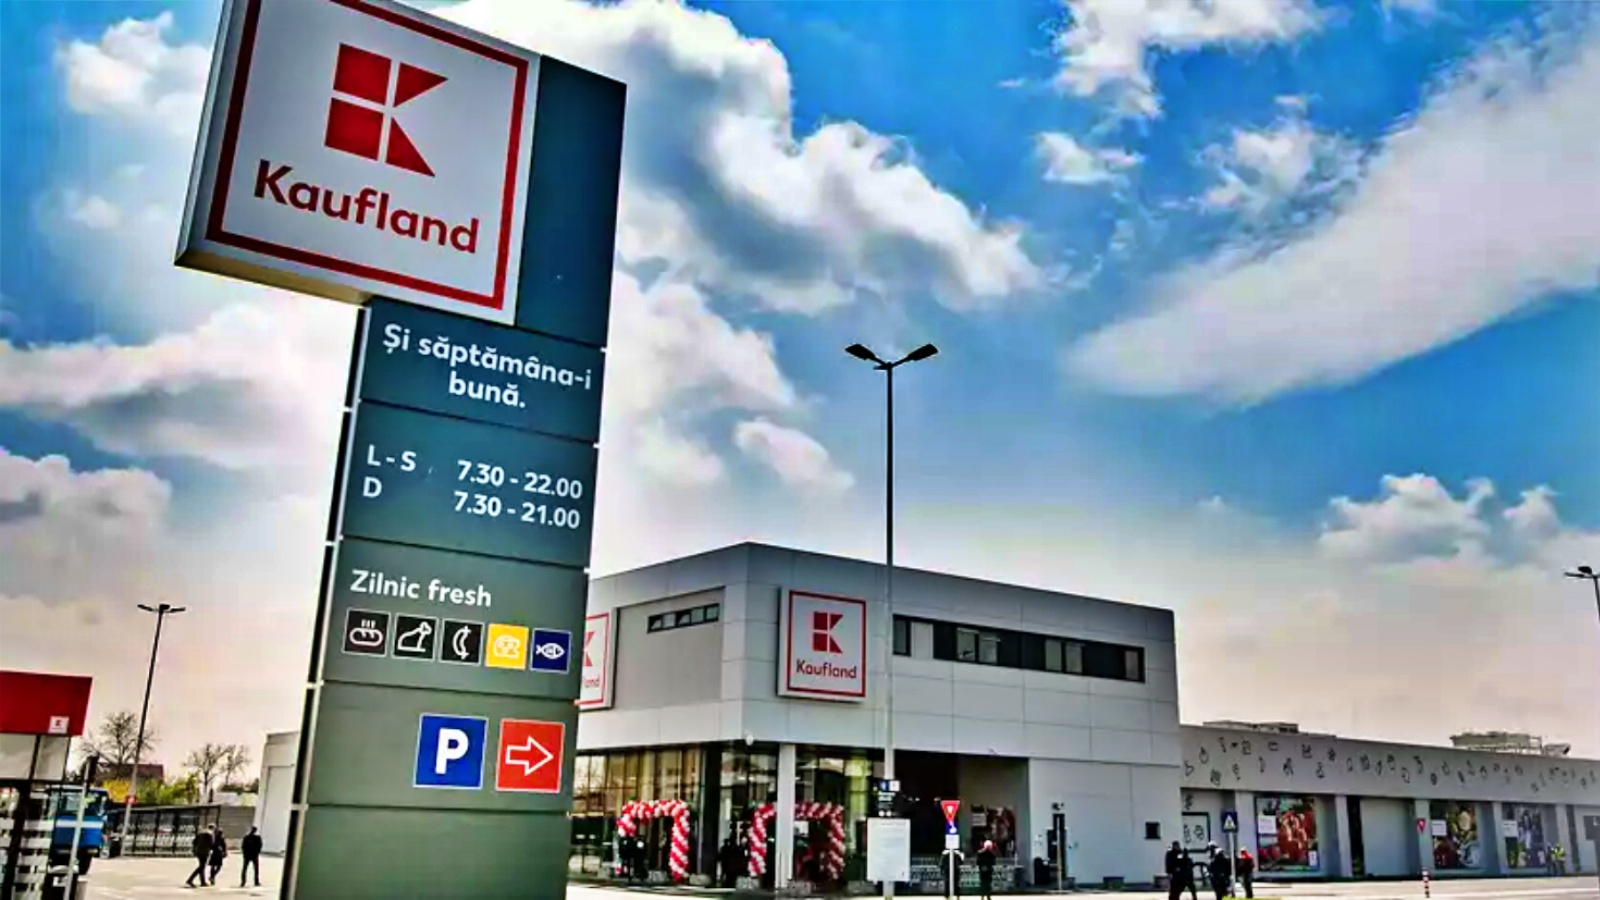 Annunciate le modifiche al negozio Kaufland ai clienti rumeni